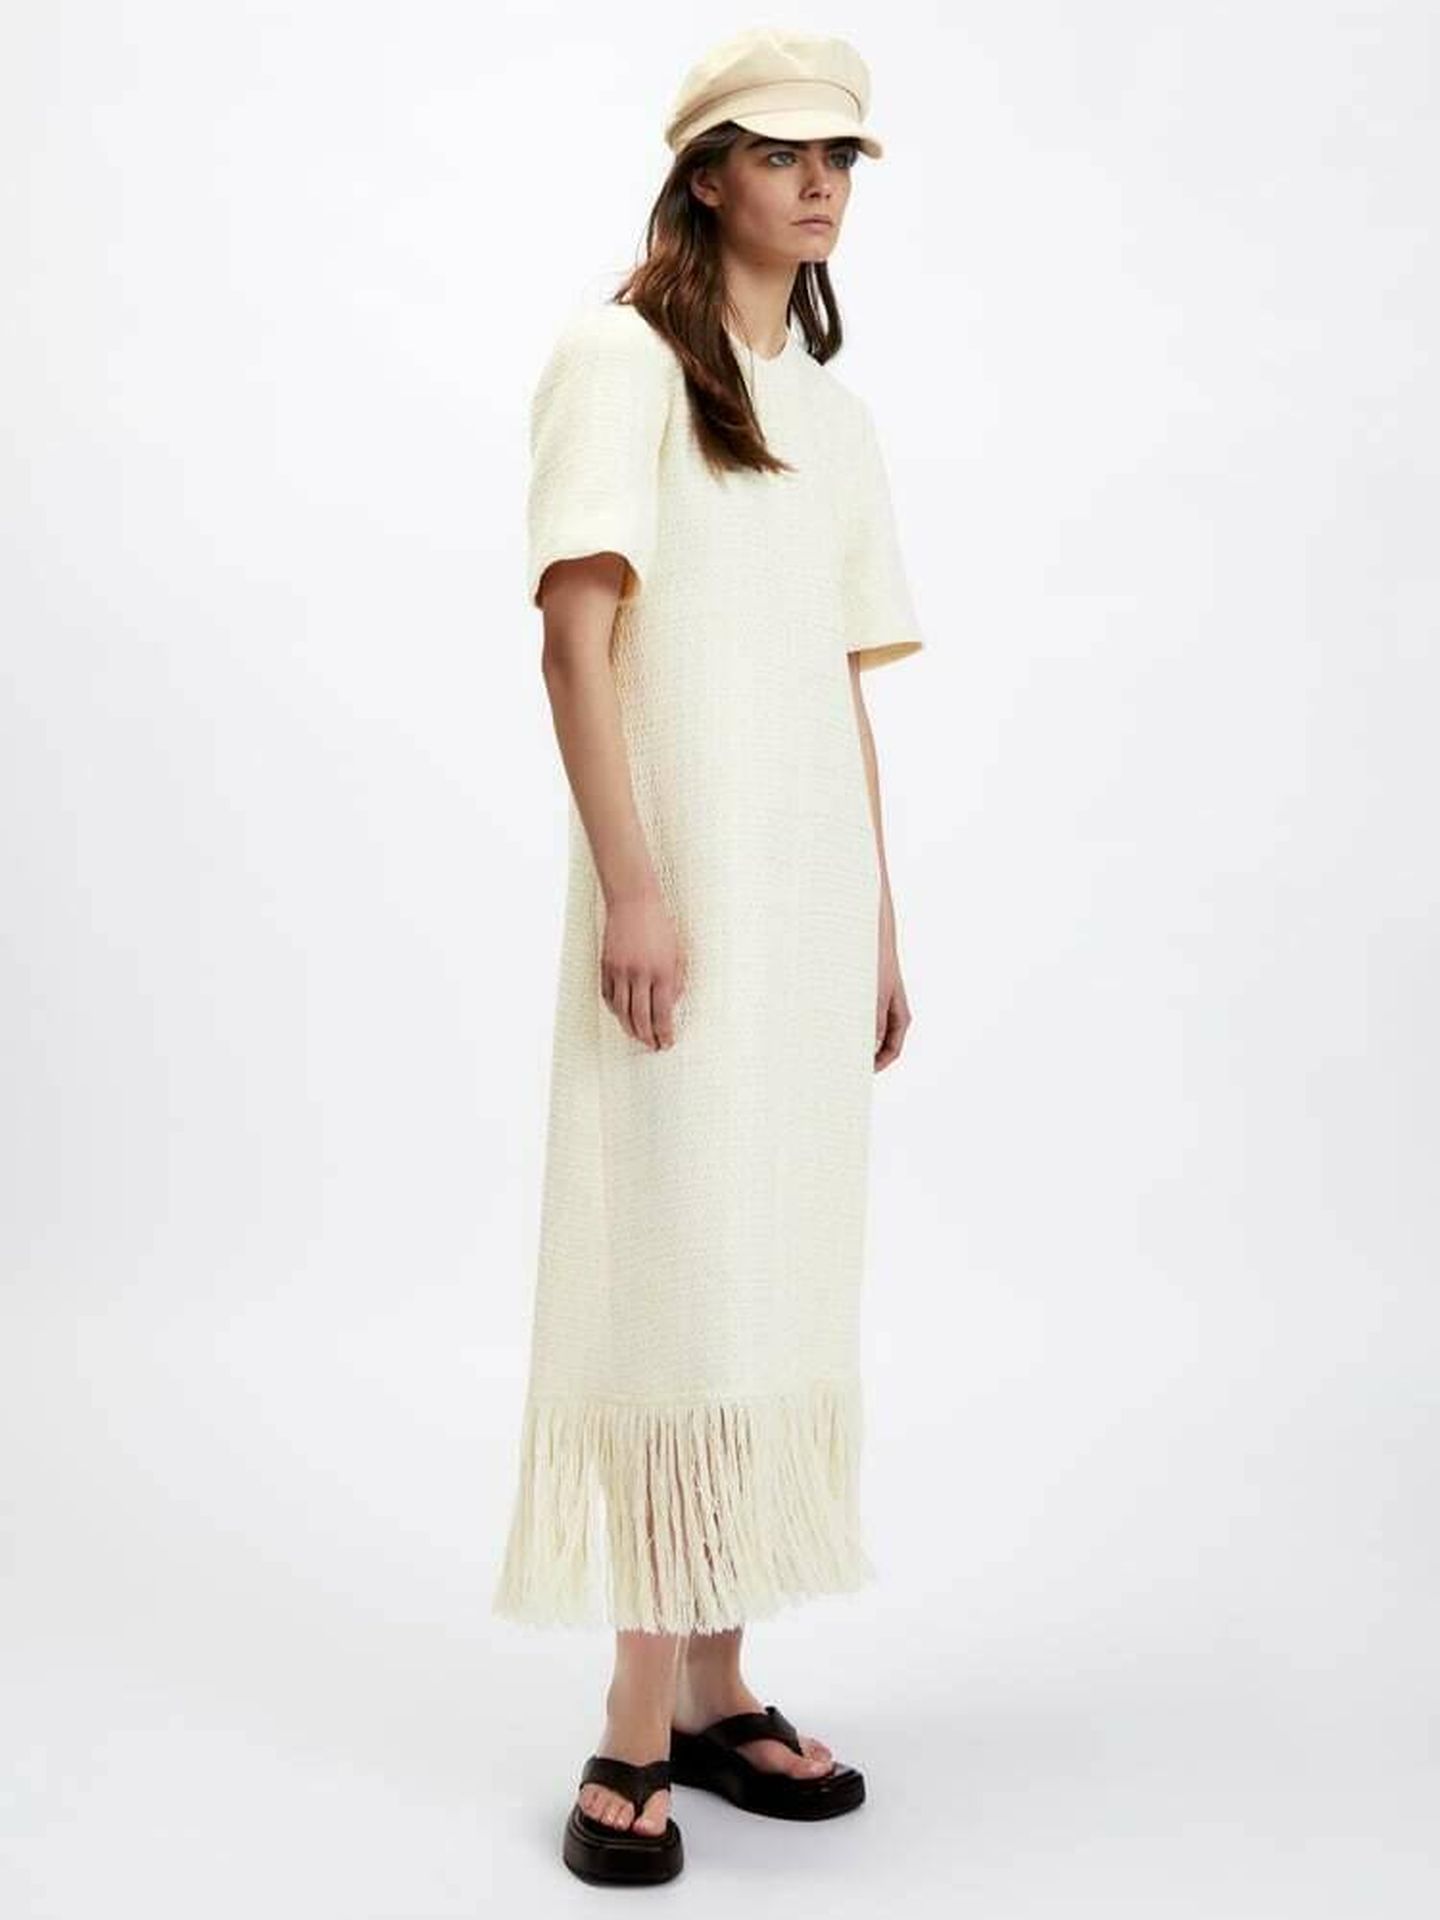 Estable Ladrillo lavar El nuevo vestido de tweed de Zara que obsesiona a las estilistas españolas